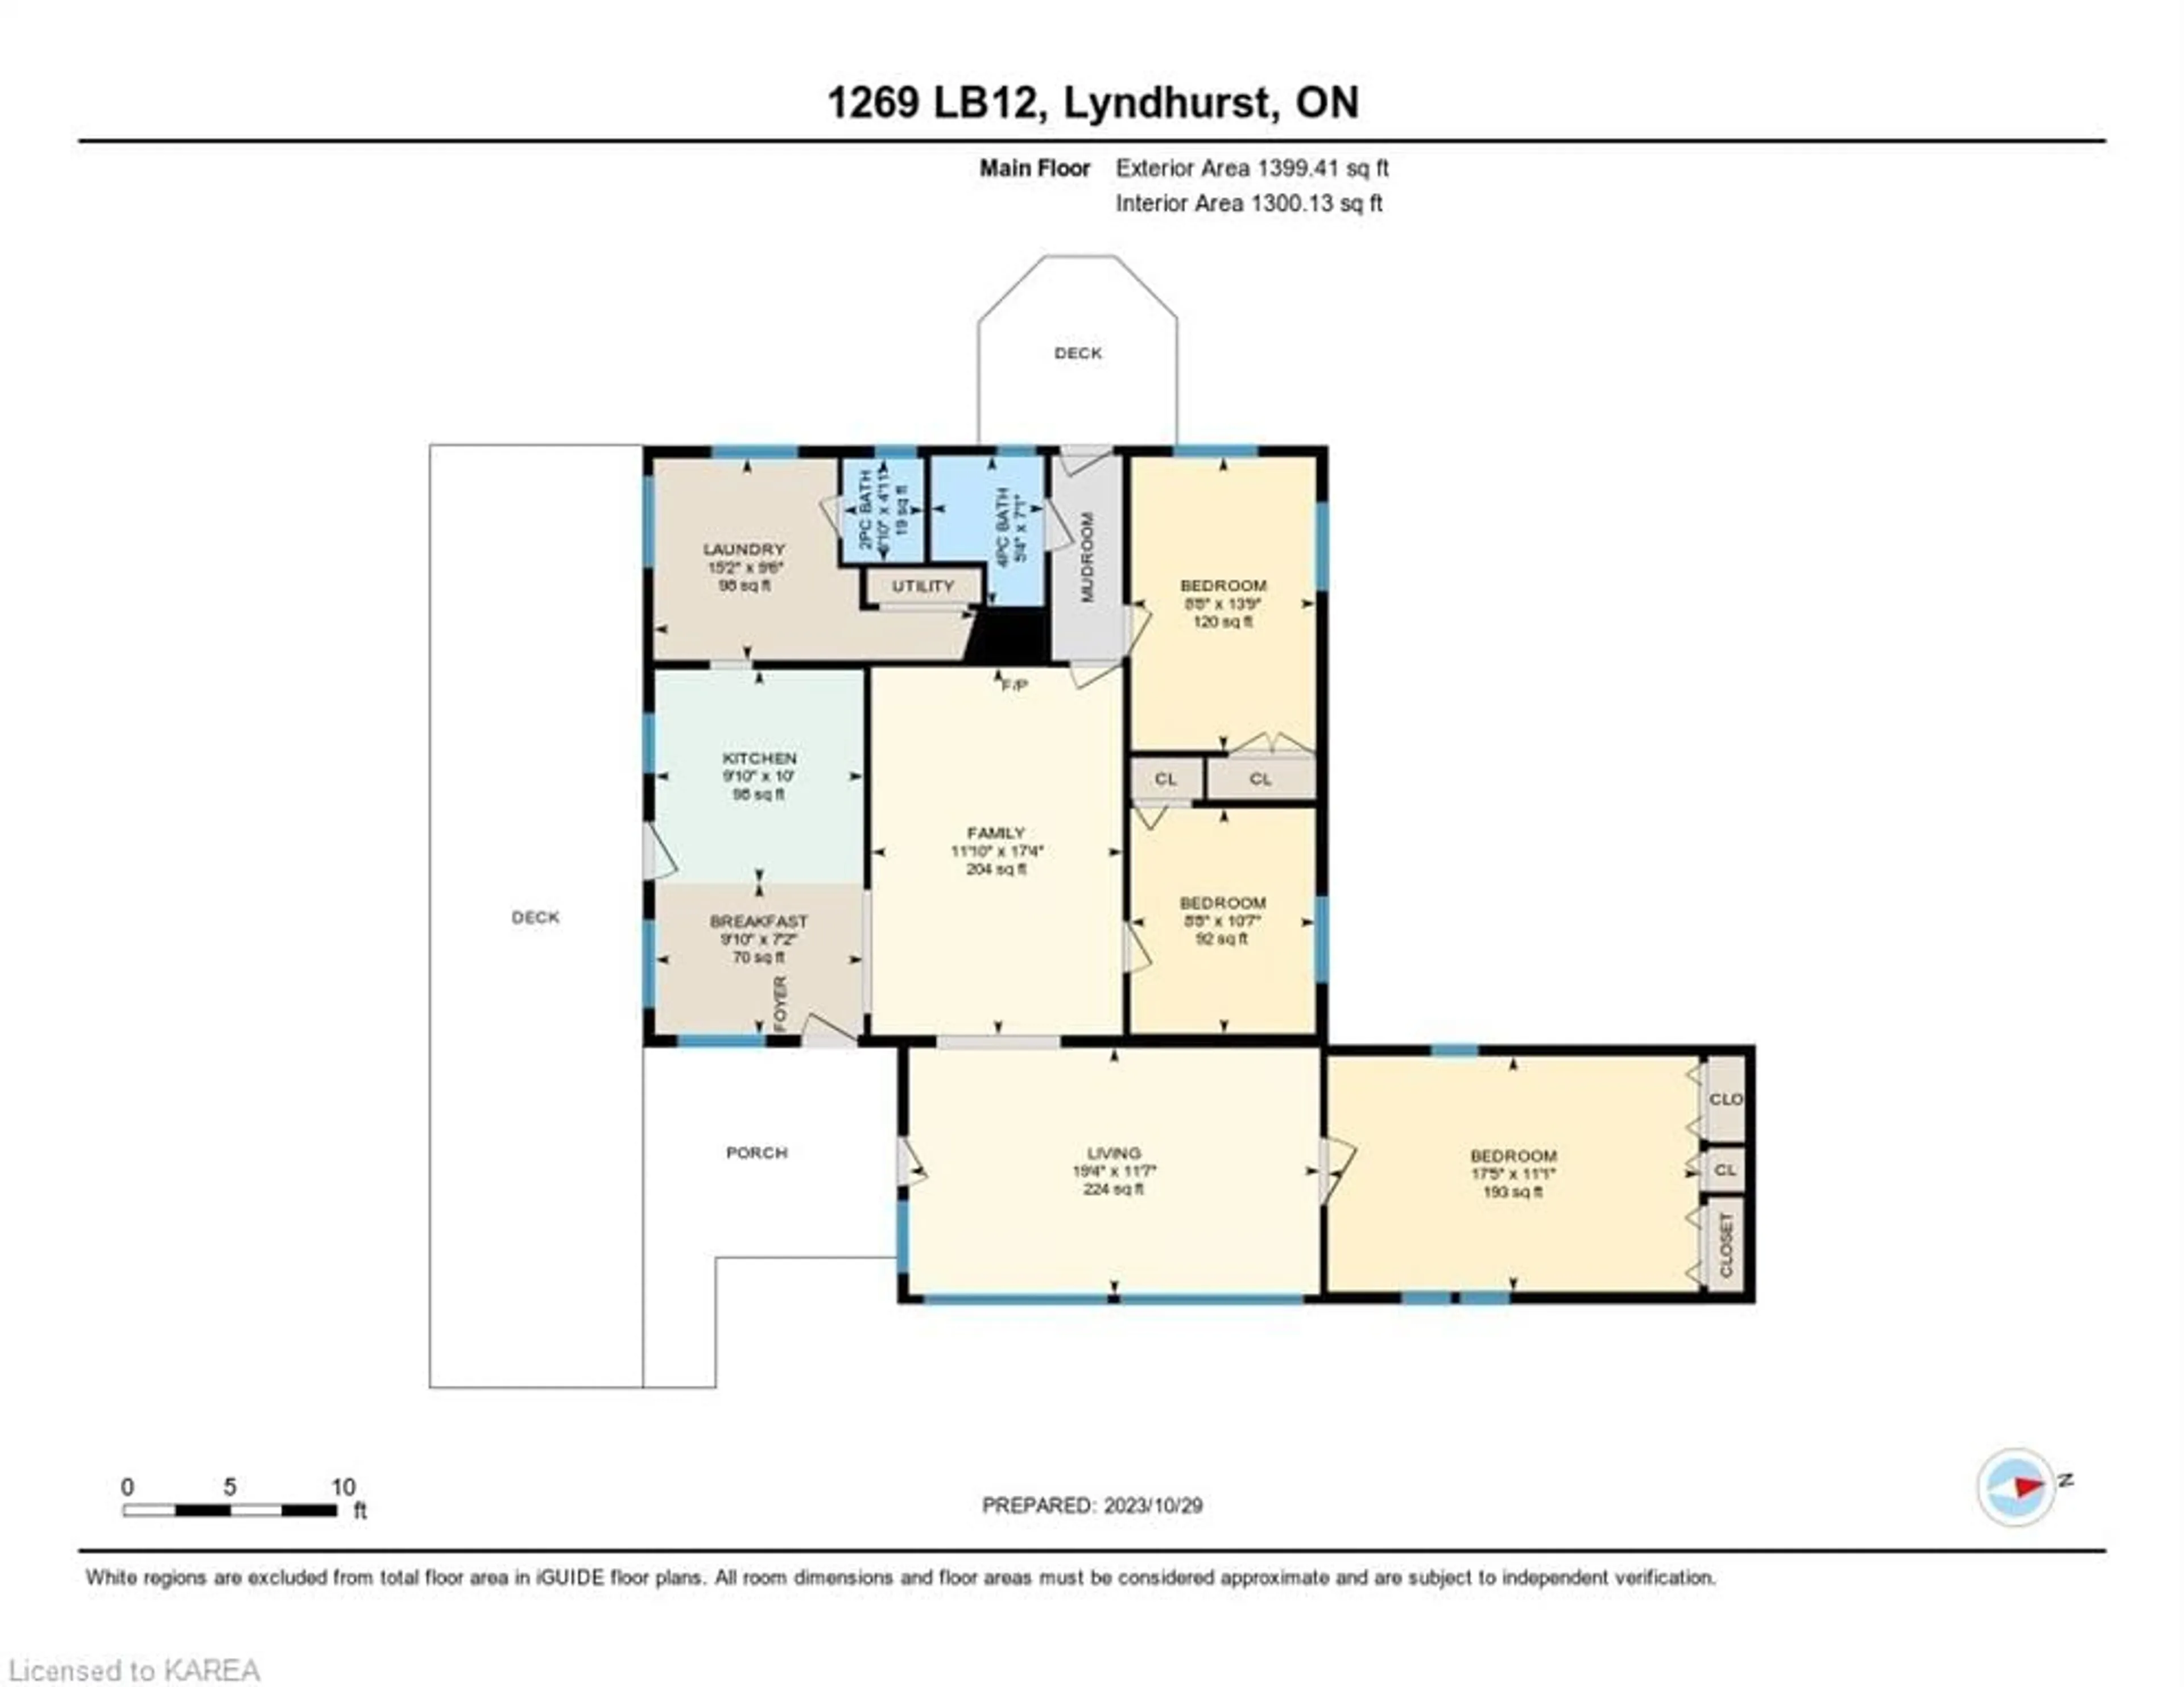 Floor plan for 1269 Lb 12 Rd, Lyndhurst Ontario K0E 1N0